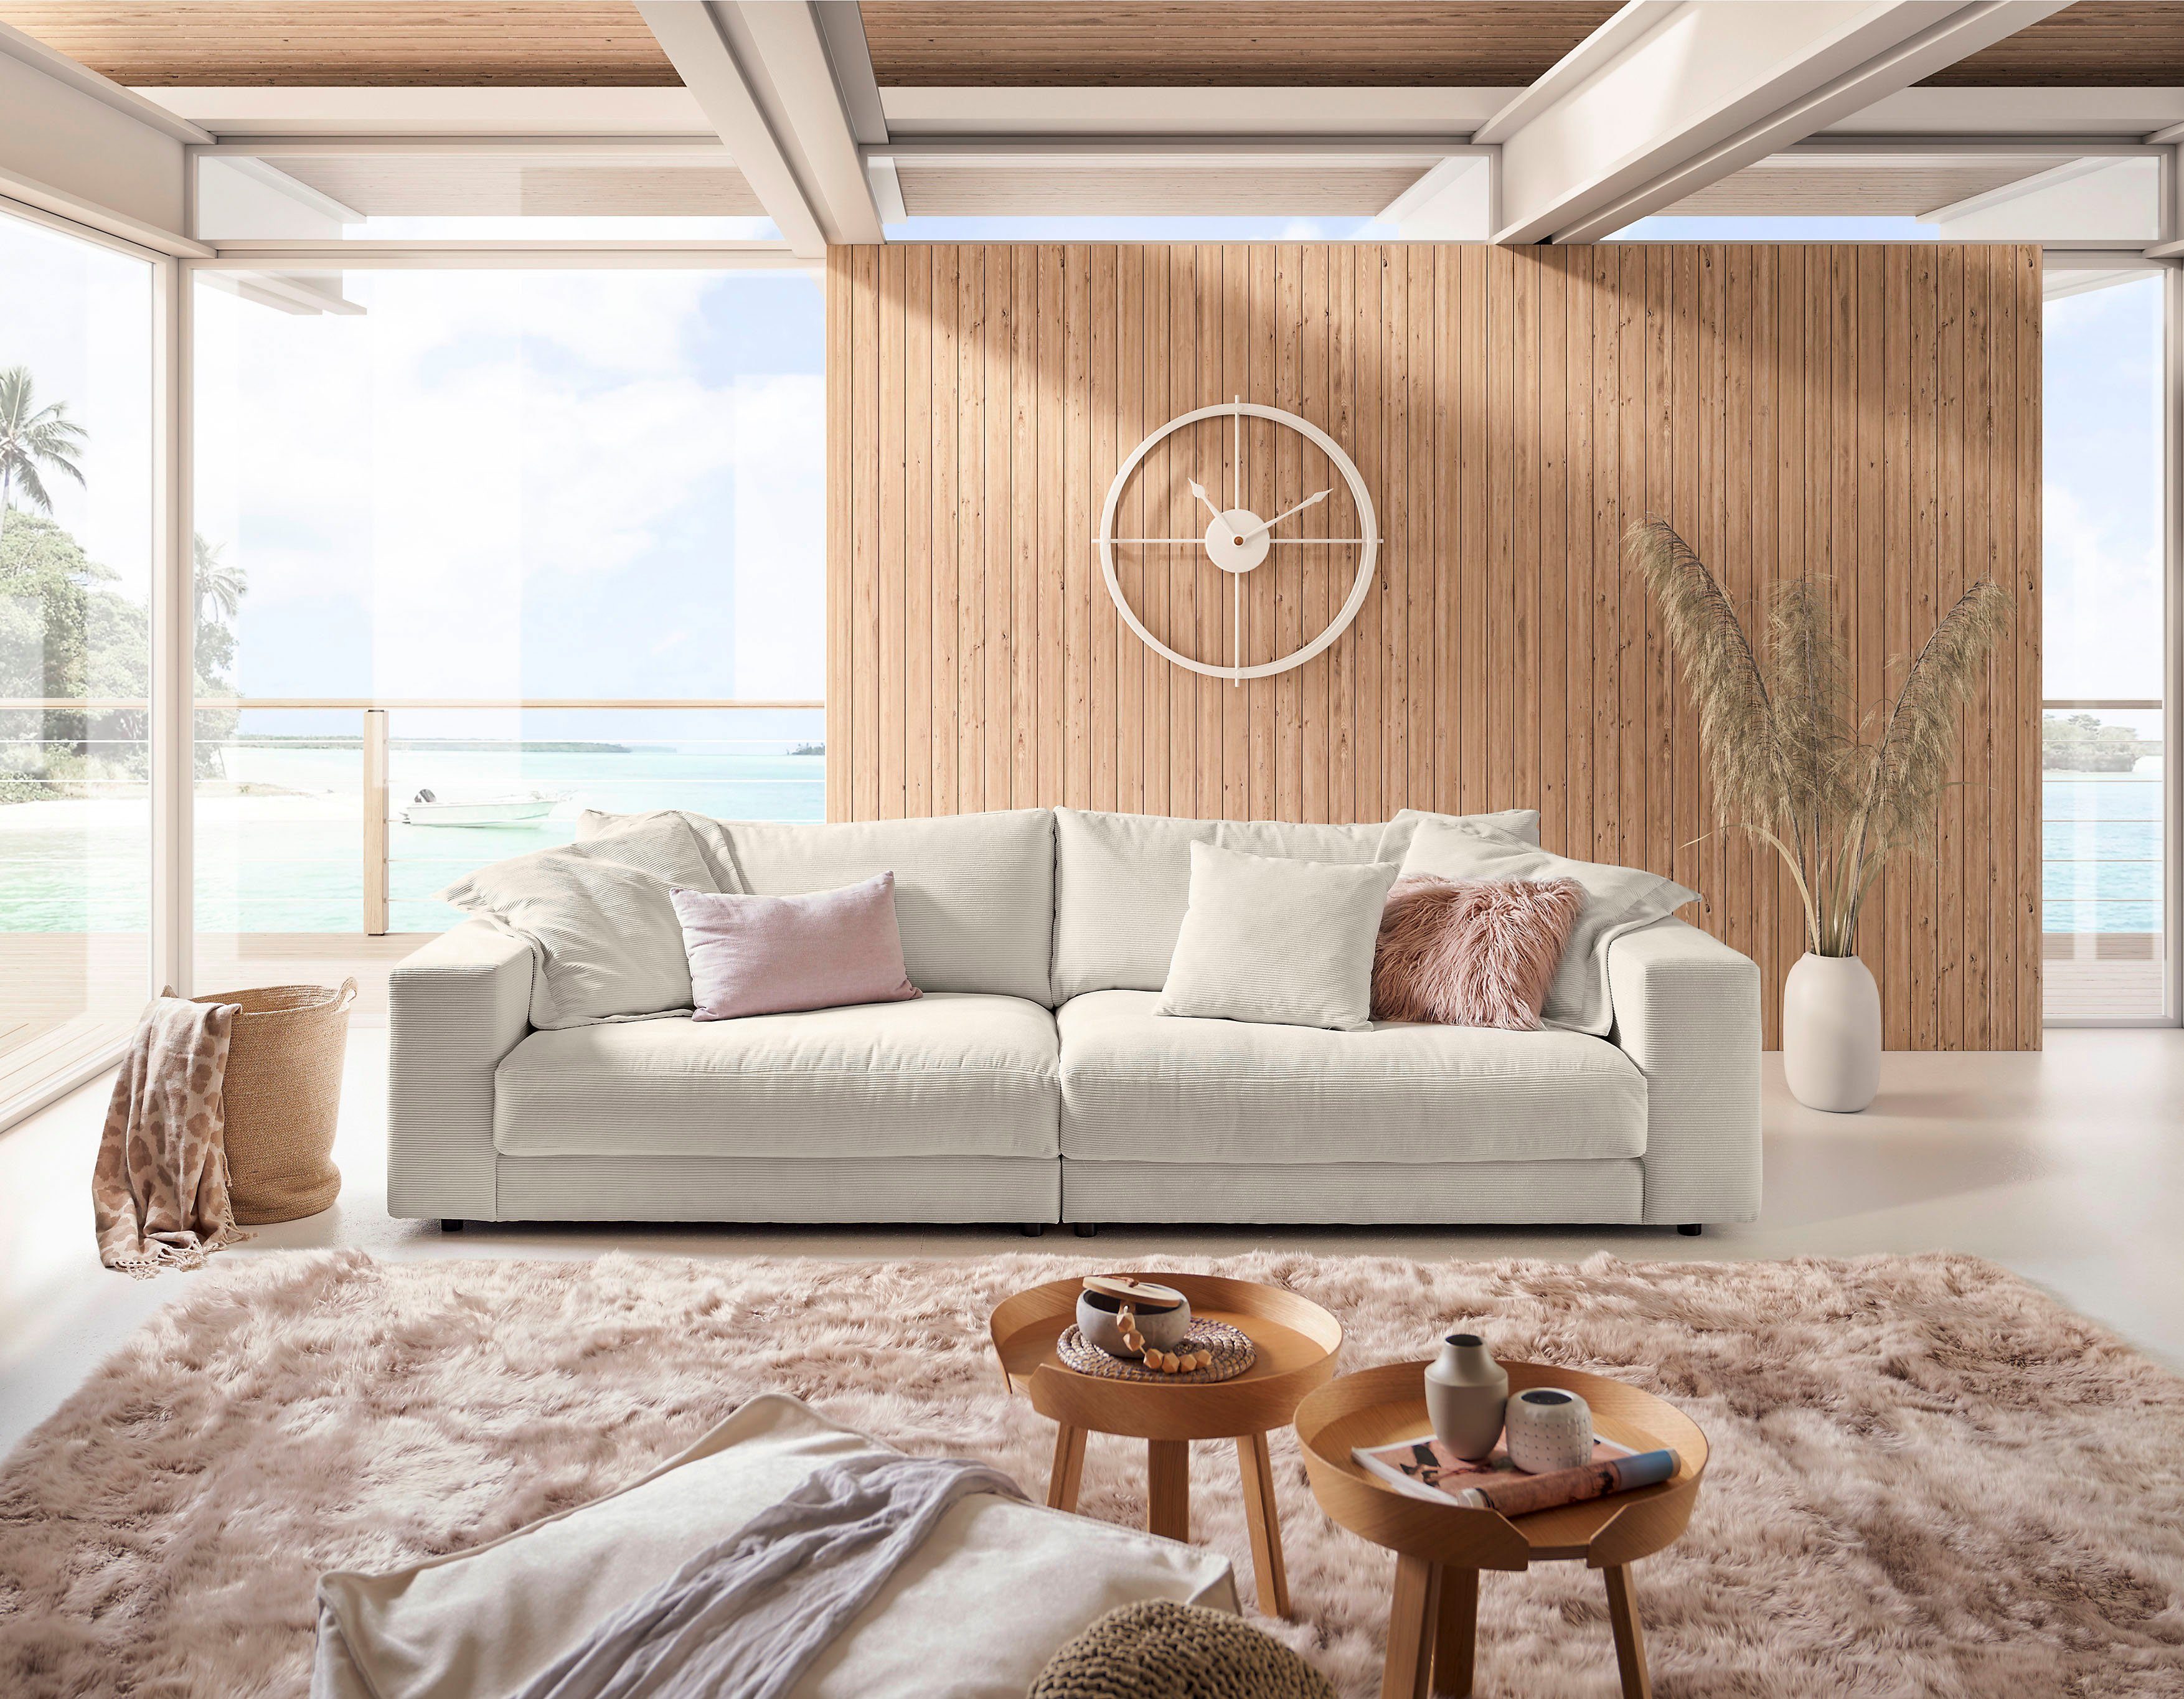 3C Candy Big-Sofa Enisa, Zeitloses und stylisches Loungemöbel, in Fein- und Breitcord | Big Sofas